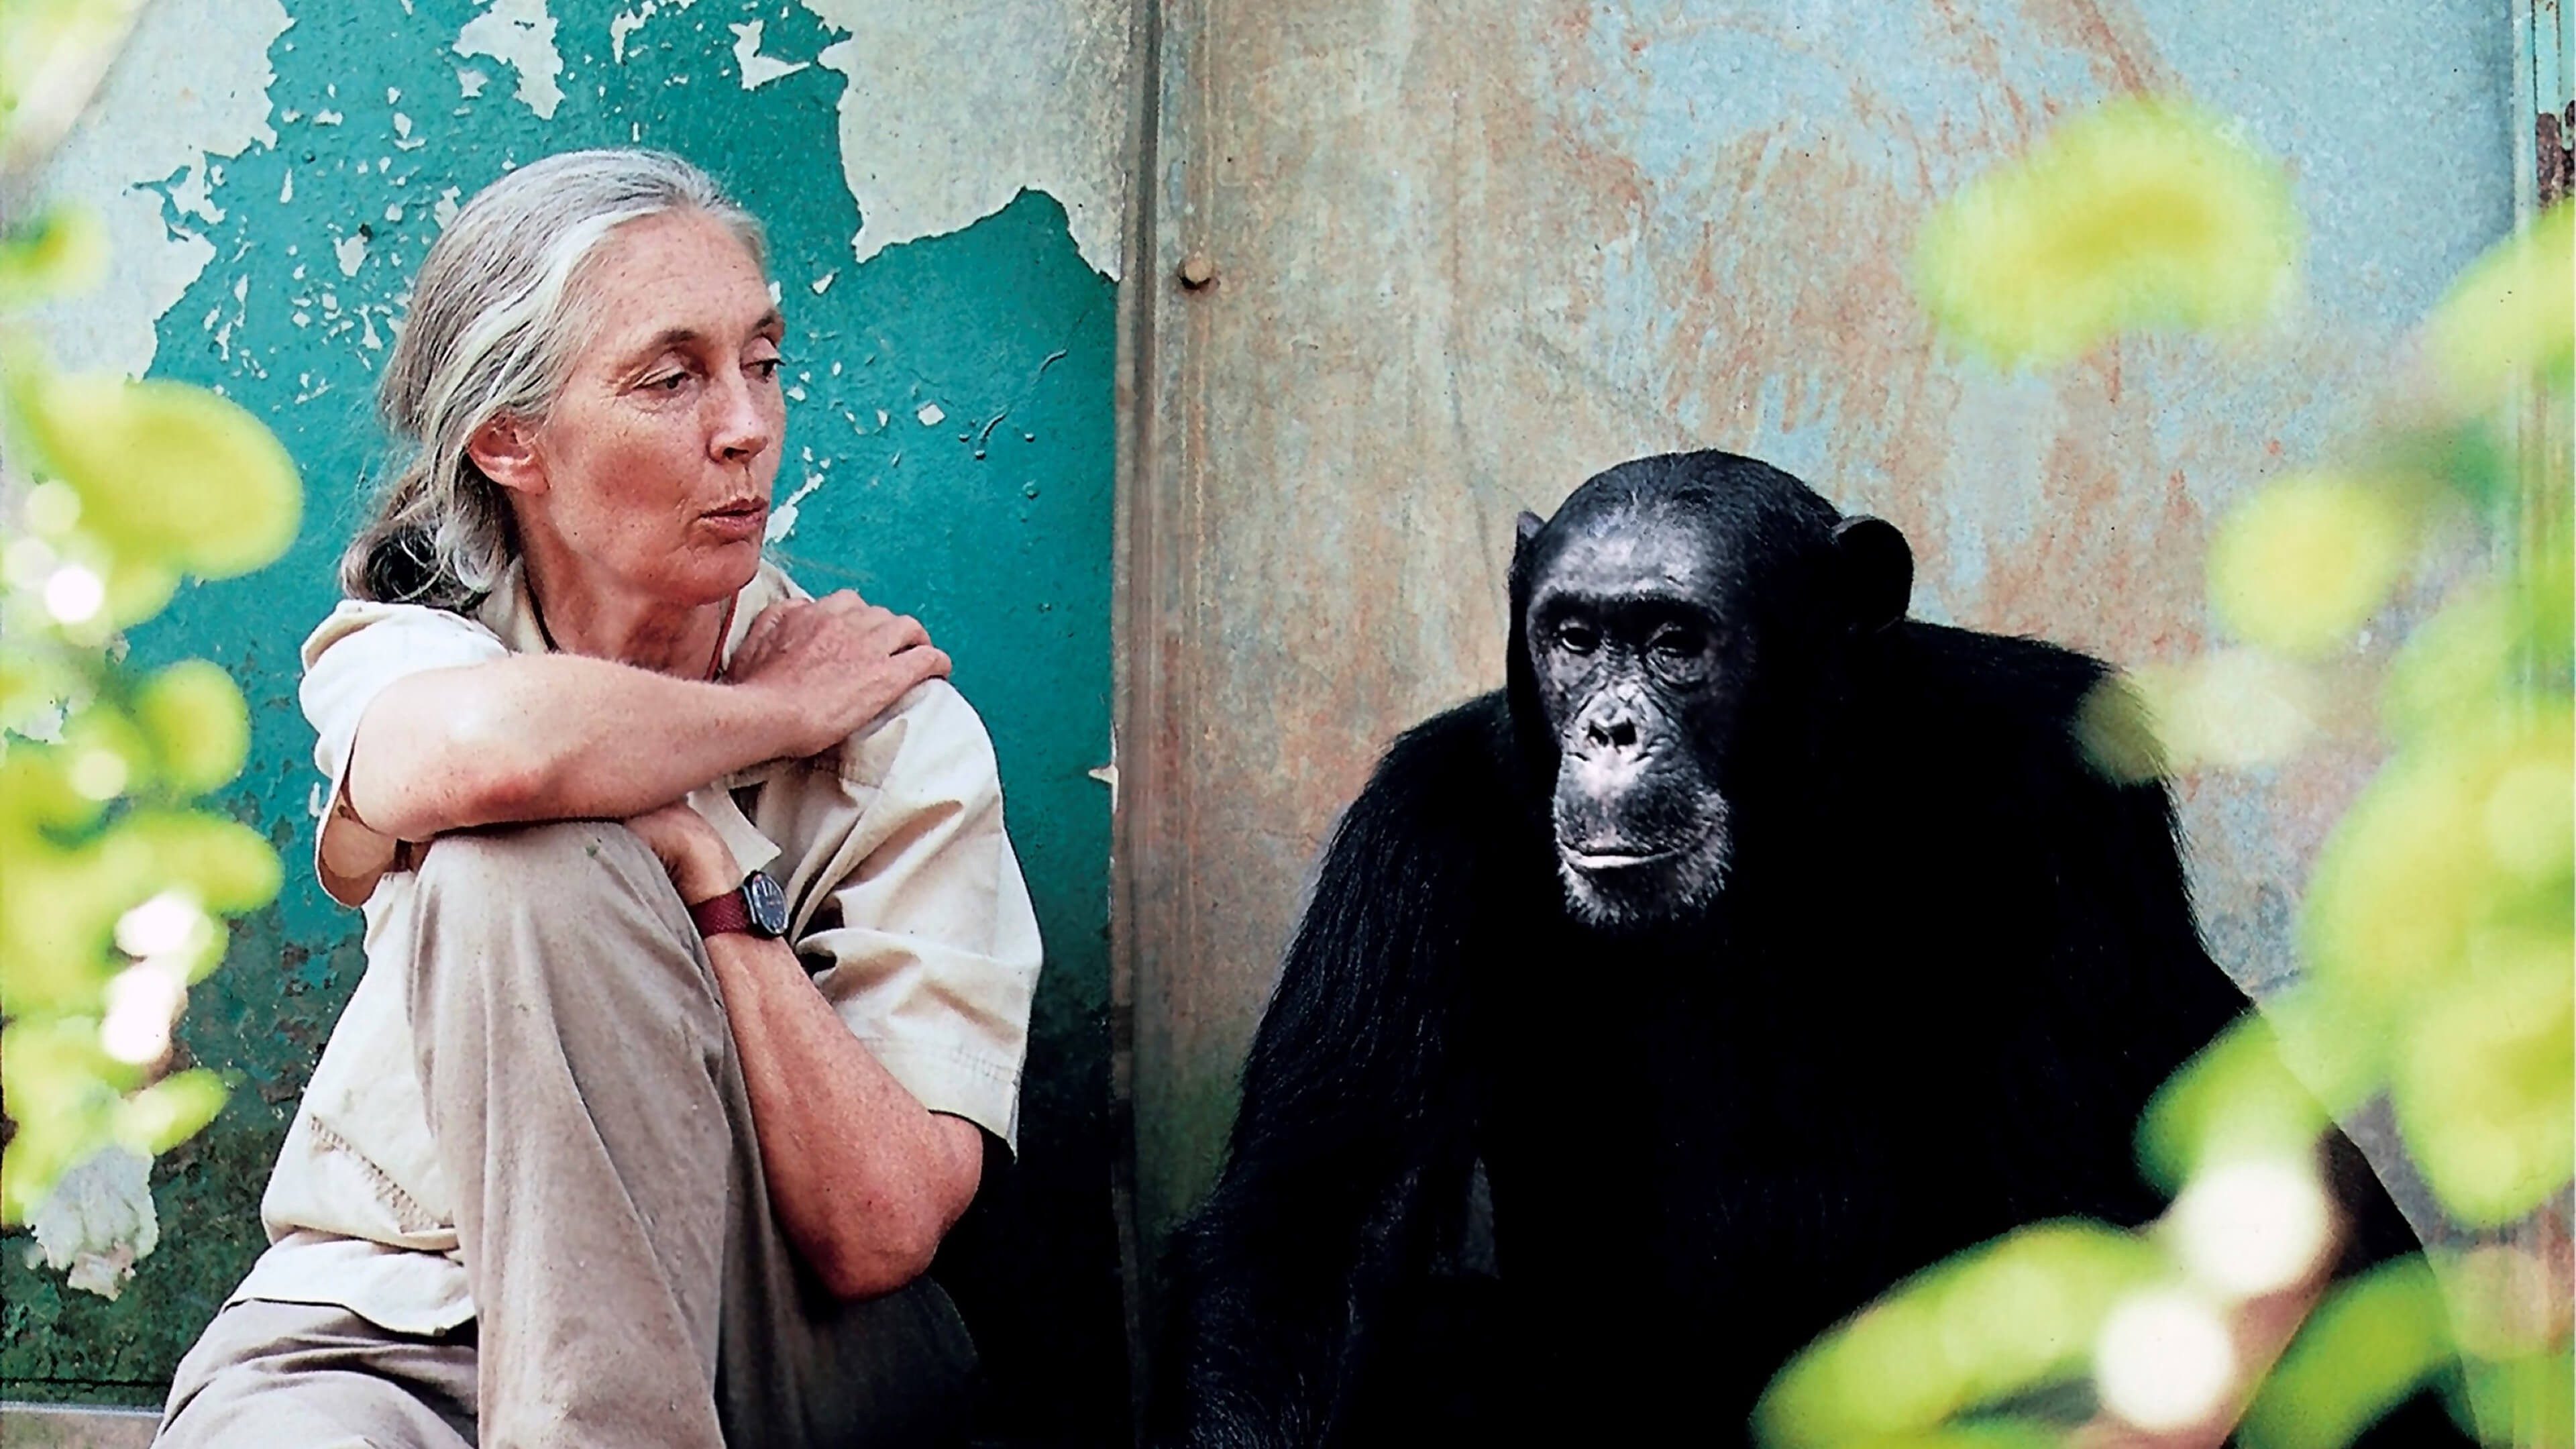 Frau mit langen grauen Haaren sitzt neben einem Schimpansen